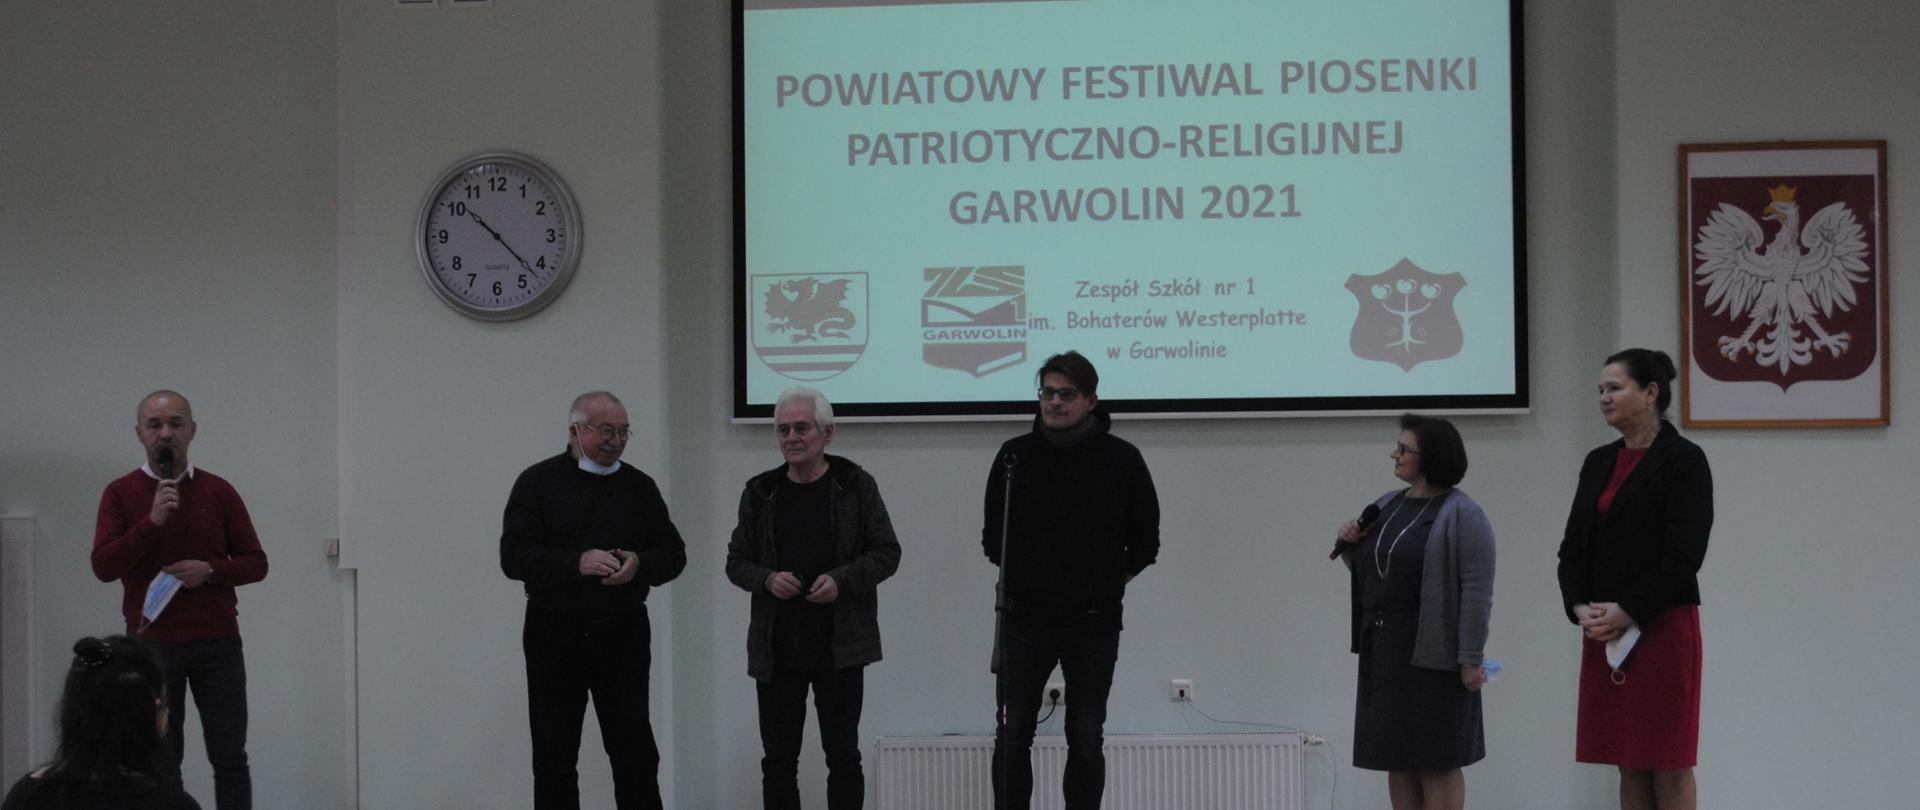 p.Ostolski, p.Czaporowski, pTalarek, pZając, p.Maszkiewicz, pTudek